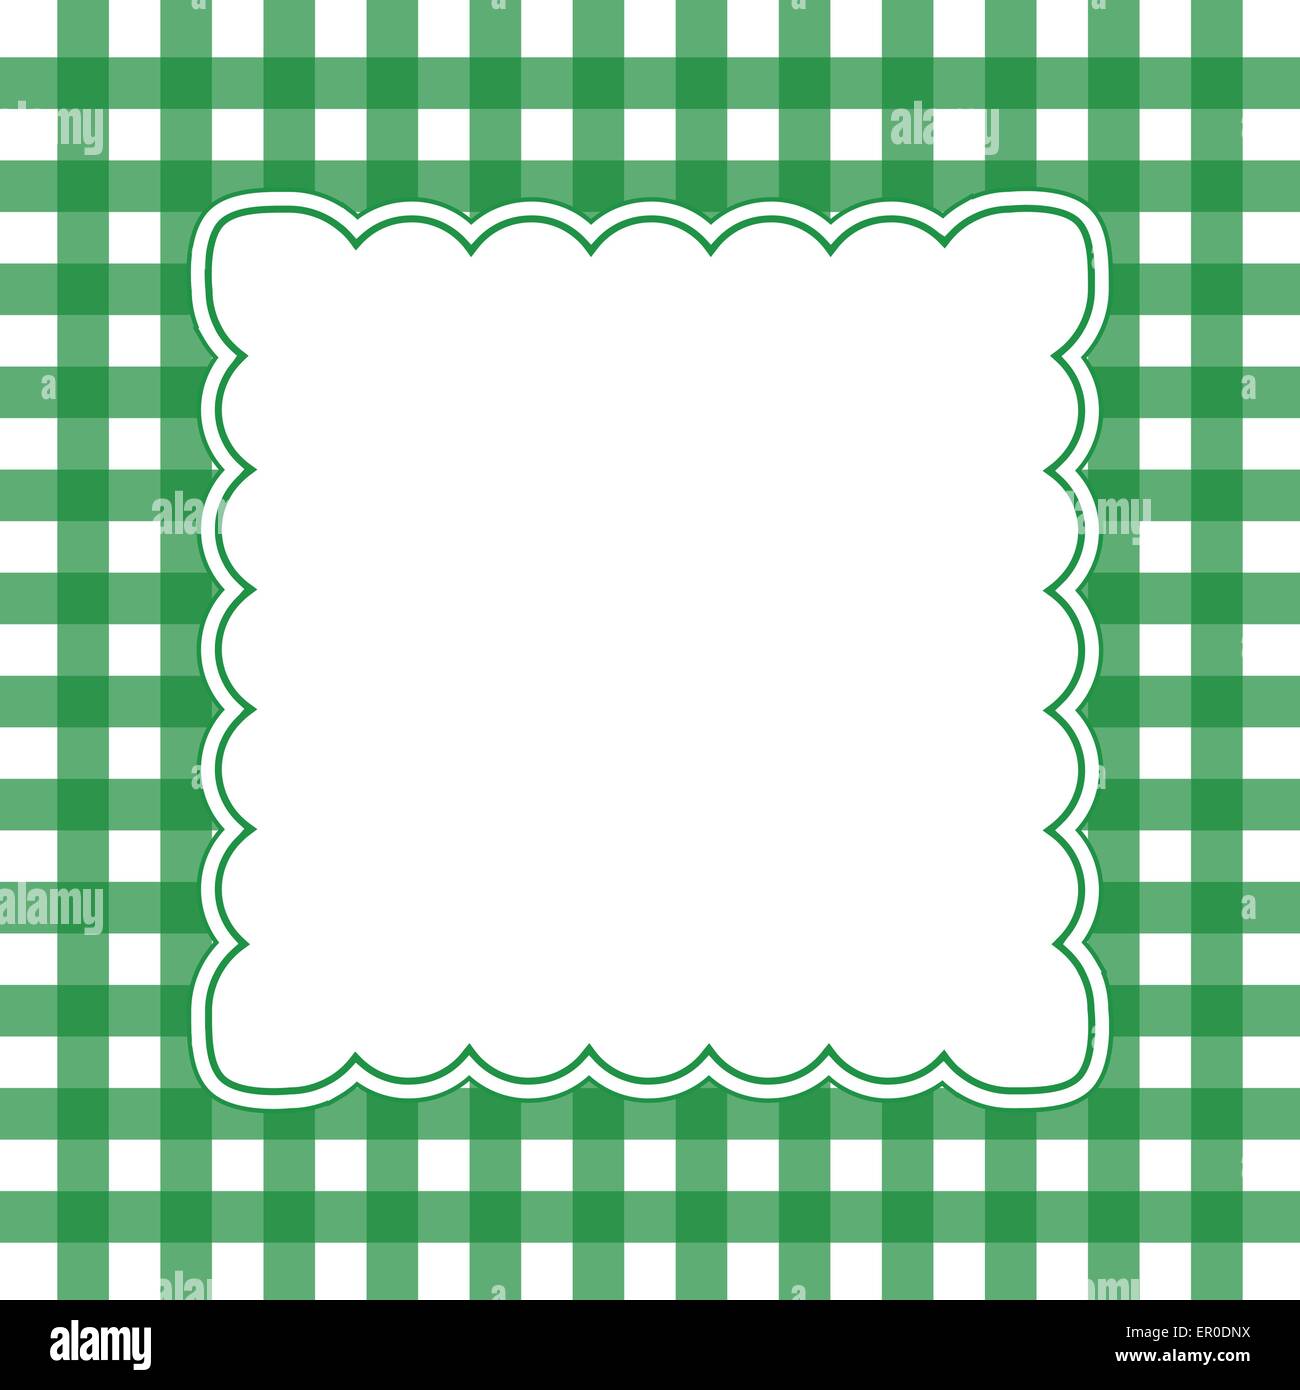 Illustrazione di verde e bianco gingham concetto di frame Illustrazione Vettoriale